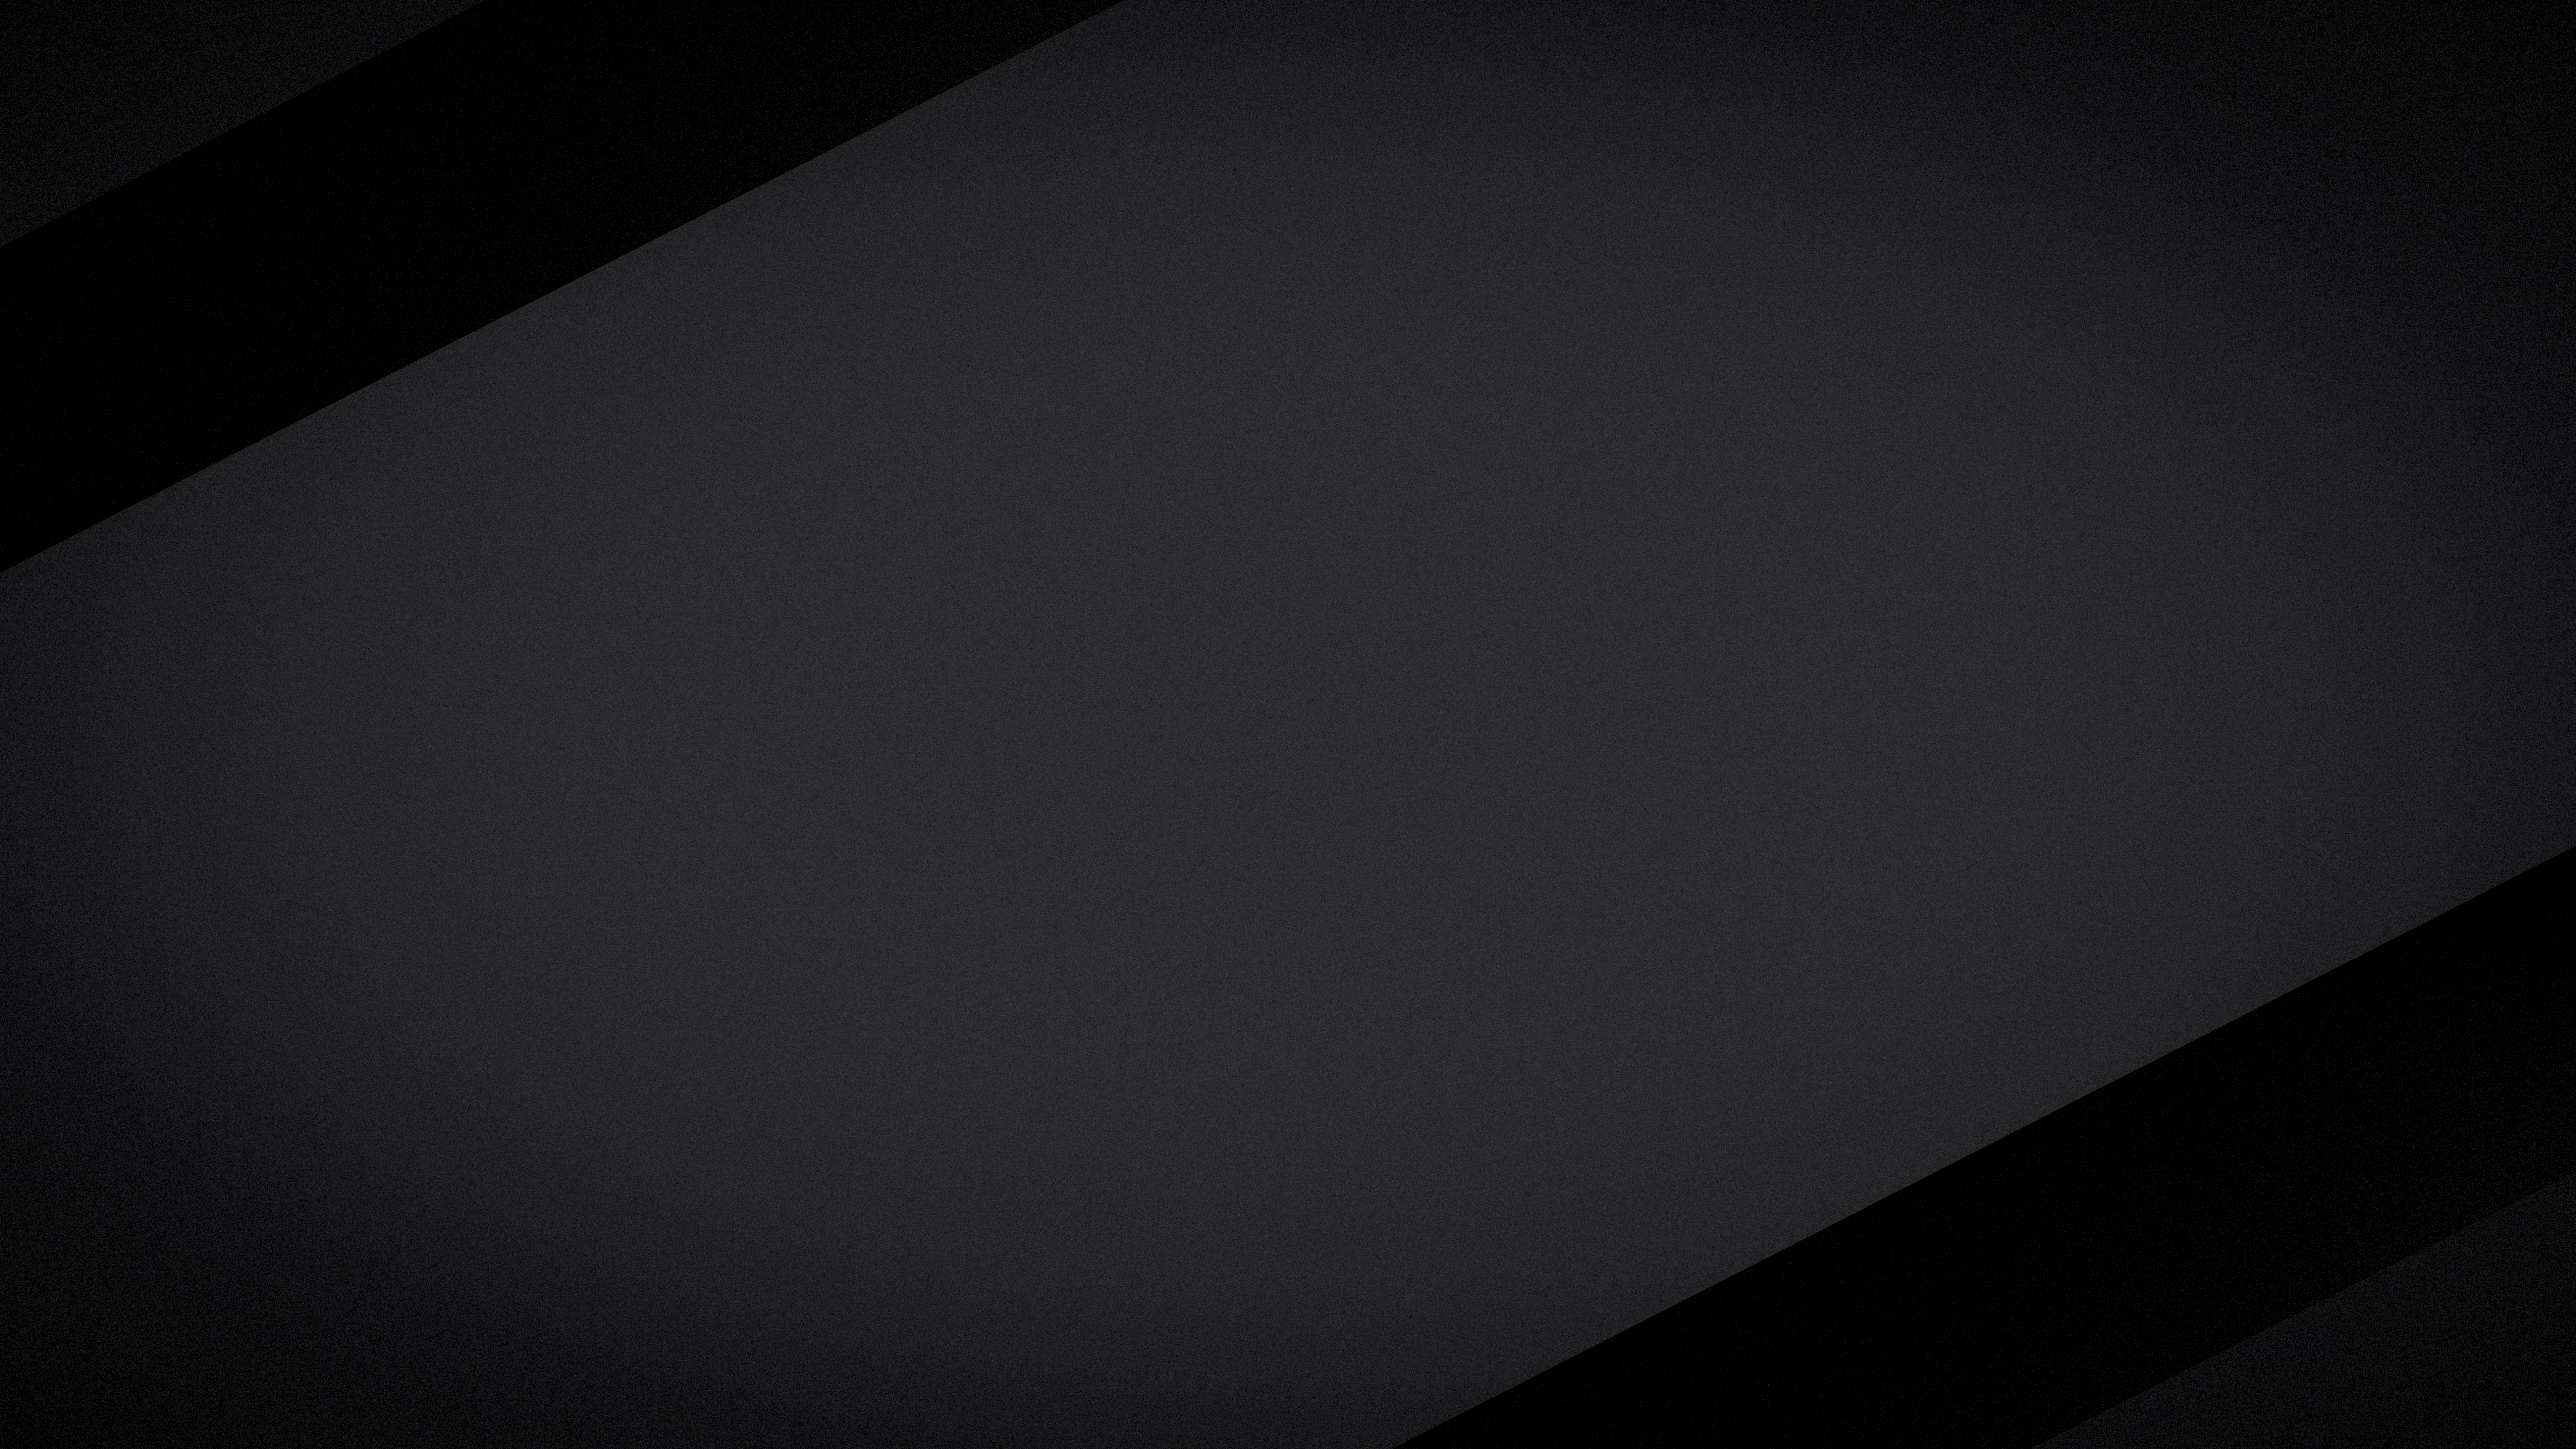 Grey 8k Ultra HD Wallpaper by 3DART